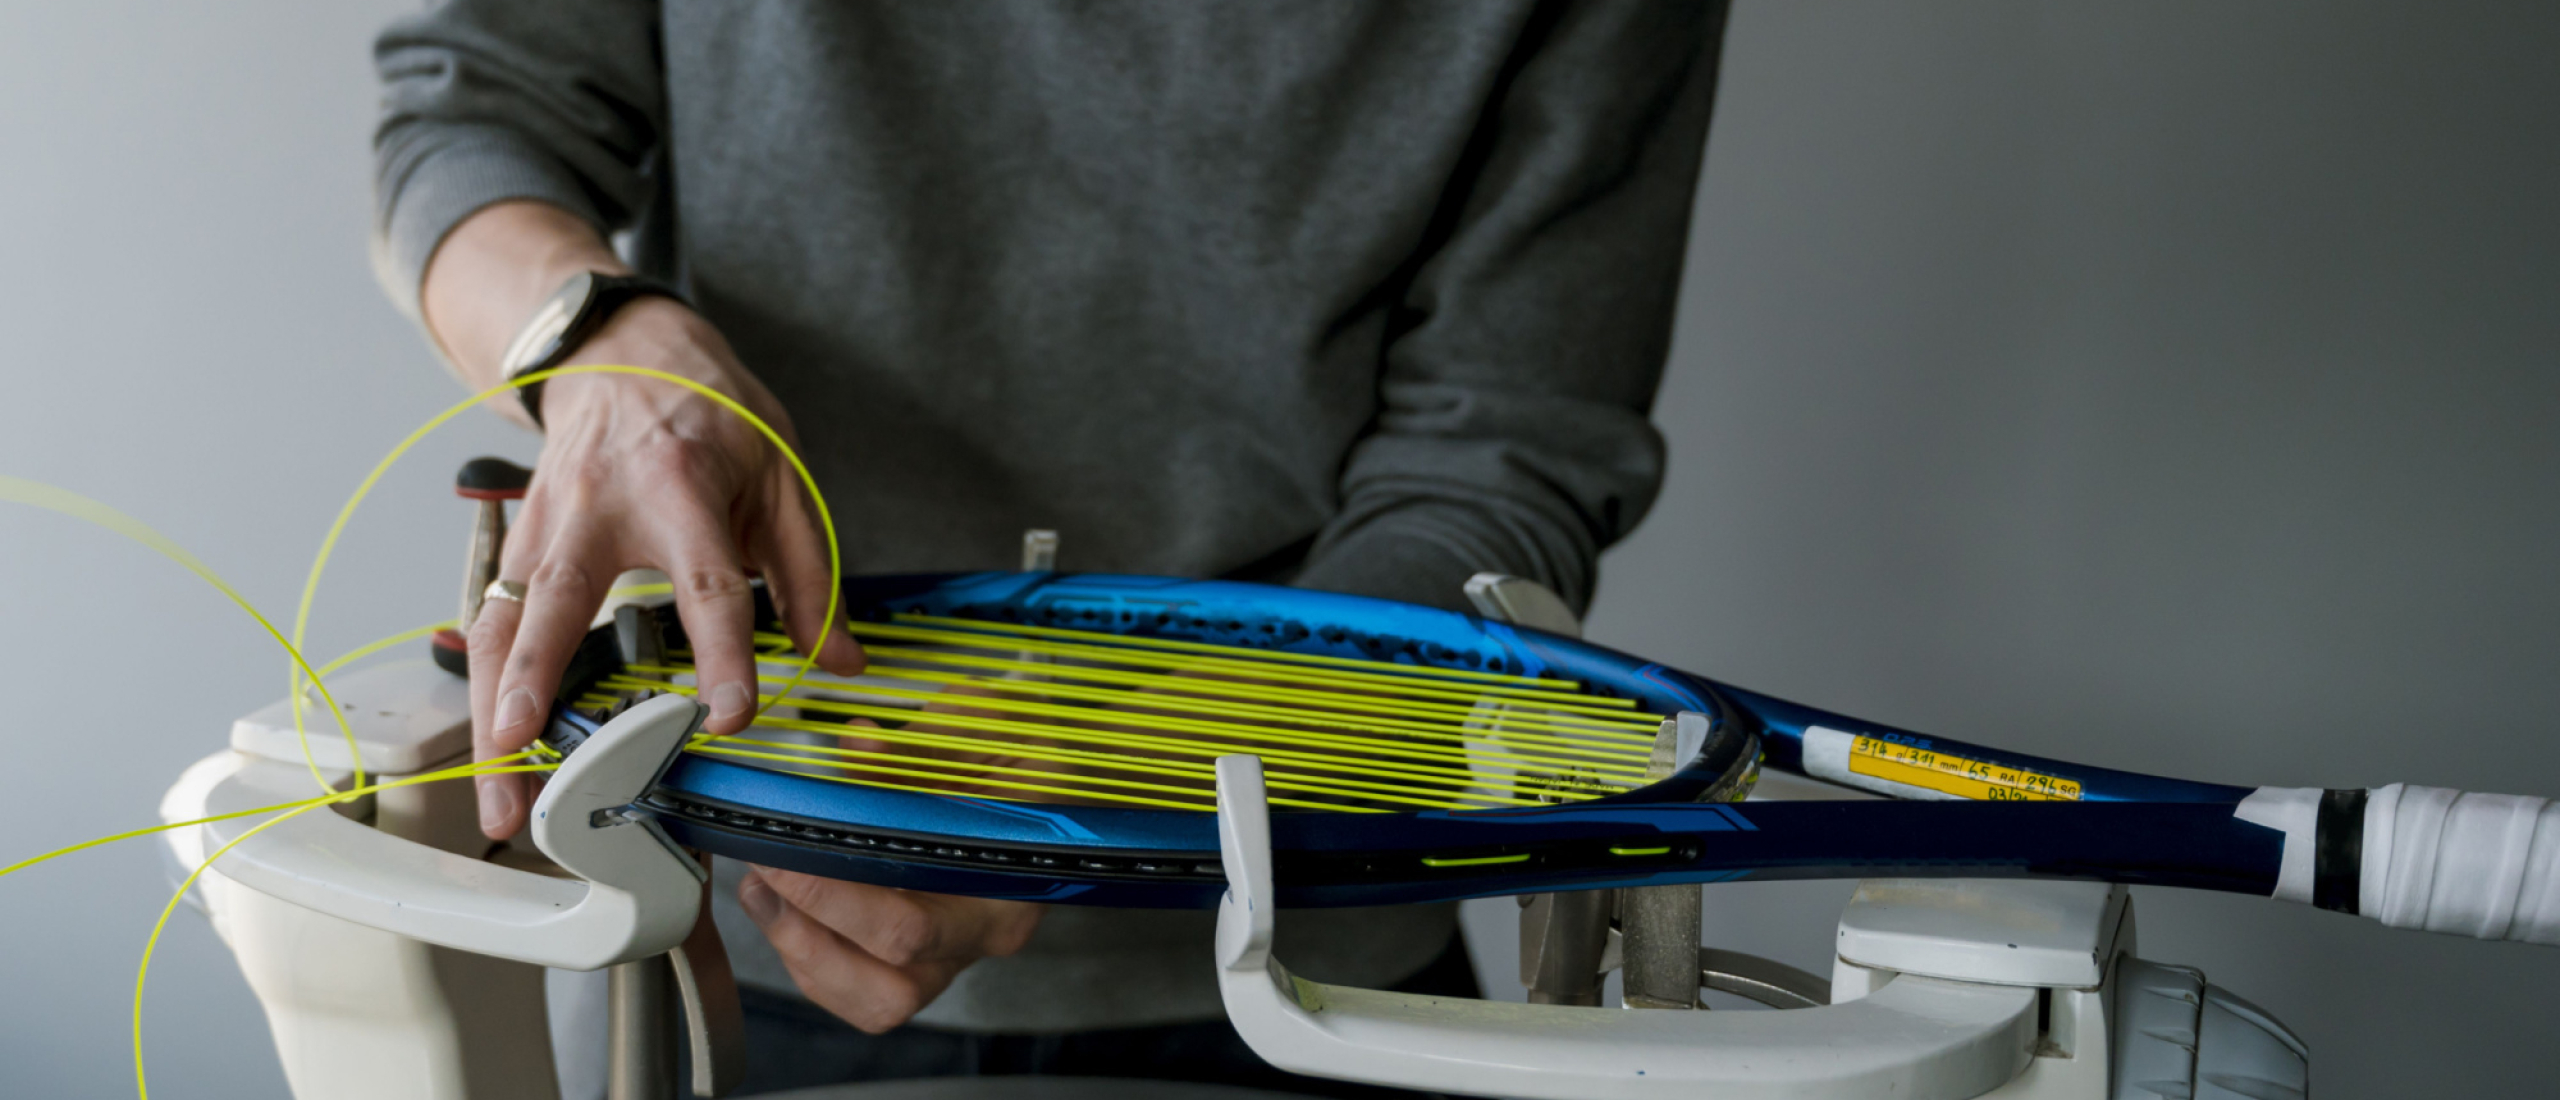 doolhof inch marionet Hoe vaak moet je je racket bespannen? | Tennis blog